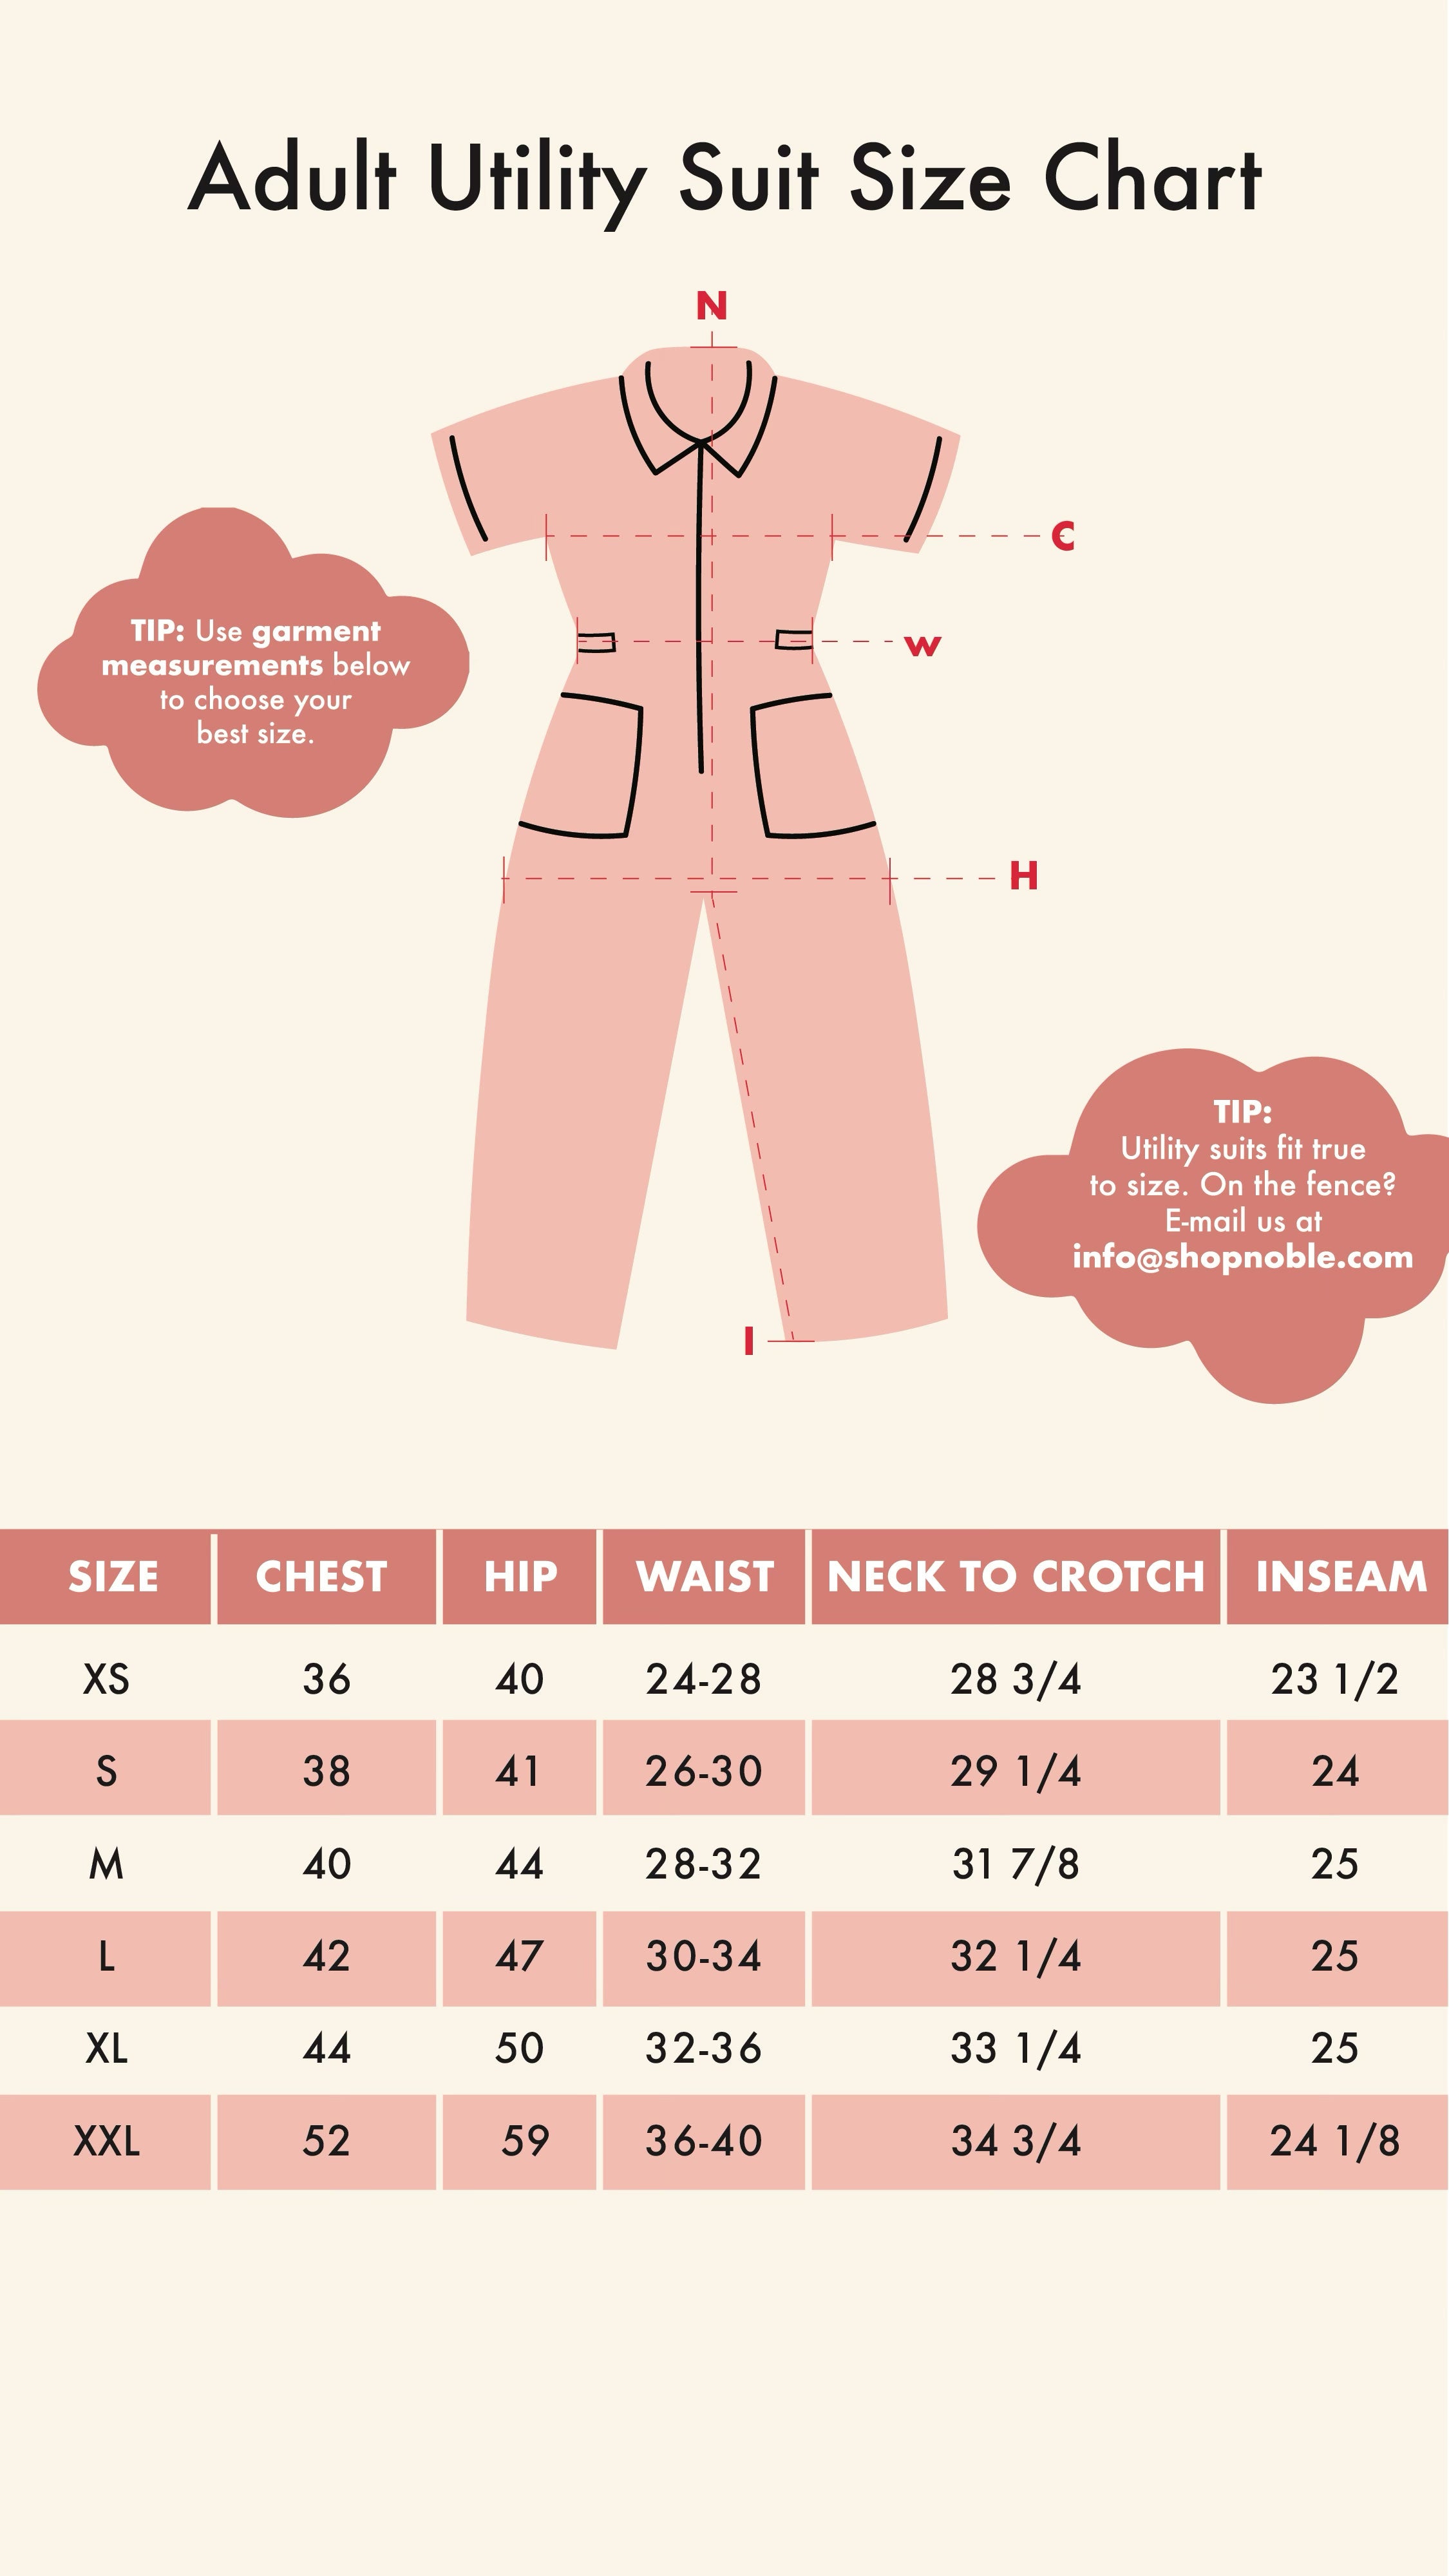 Adult Utility Suit Size Chart